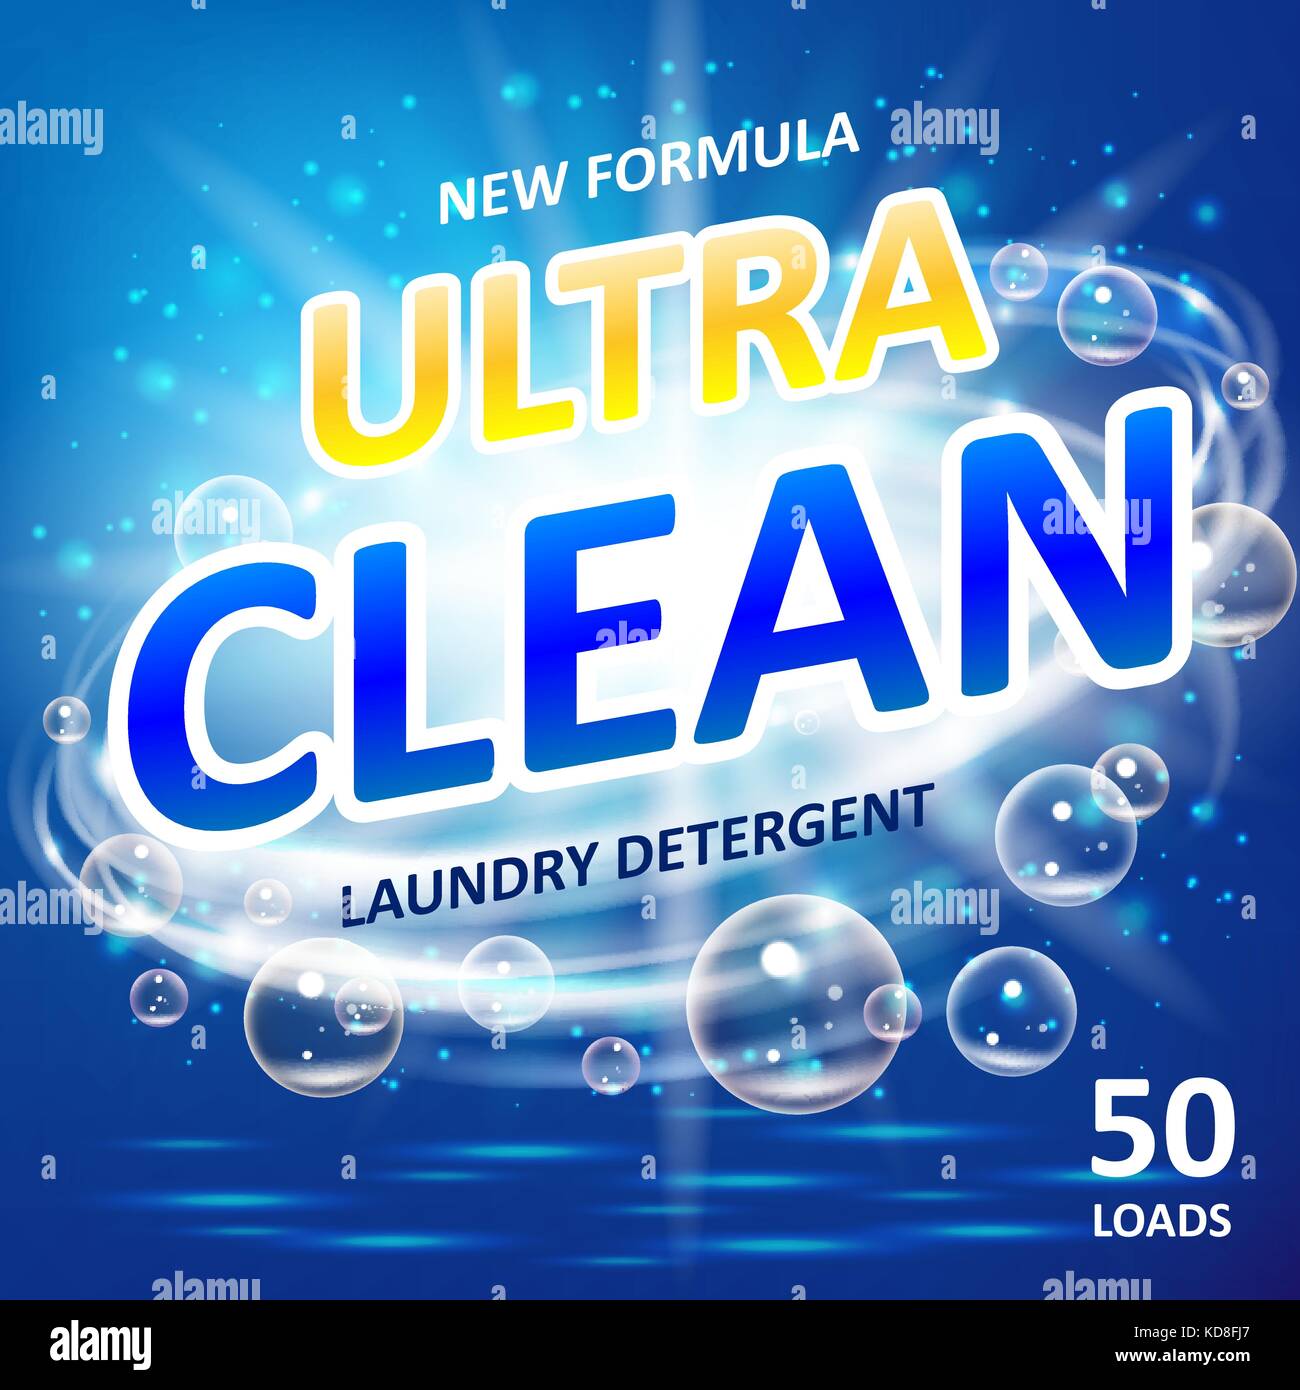 Seife Ultra Clean Design Produkt. WC oder Bad Whirlpool Reiniger. Waschen Seife Hintergrund Design. Waschmittel anzeigen. Waschmaschine Waschmittel Verpackung Vorlage. Vector Illustration Stock Vektor